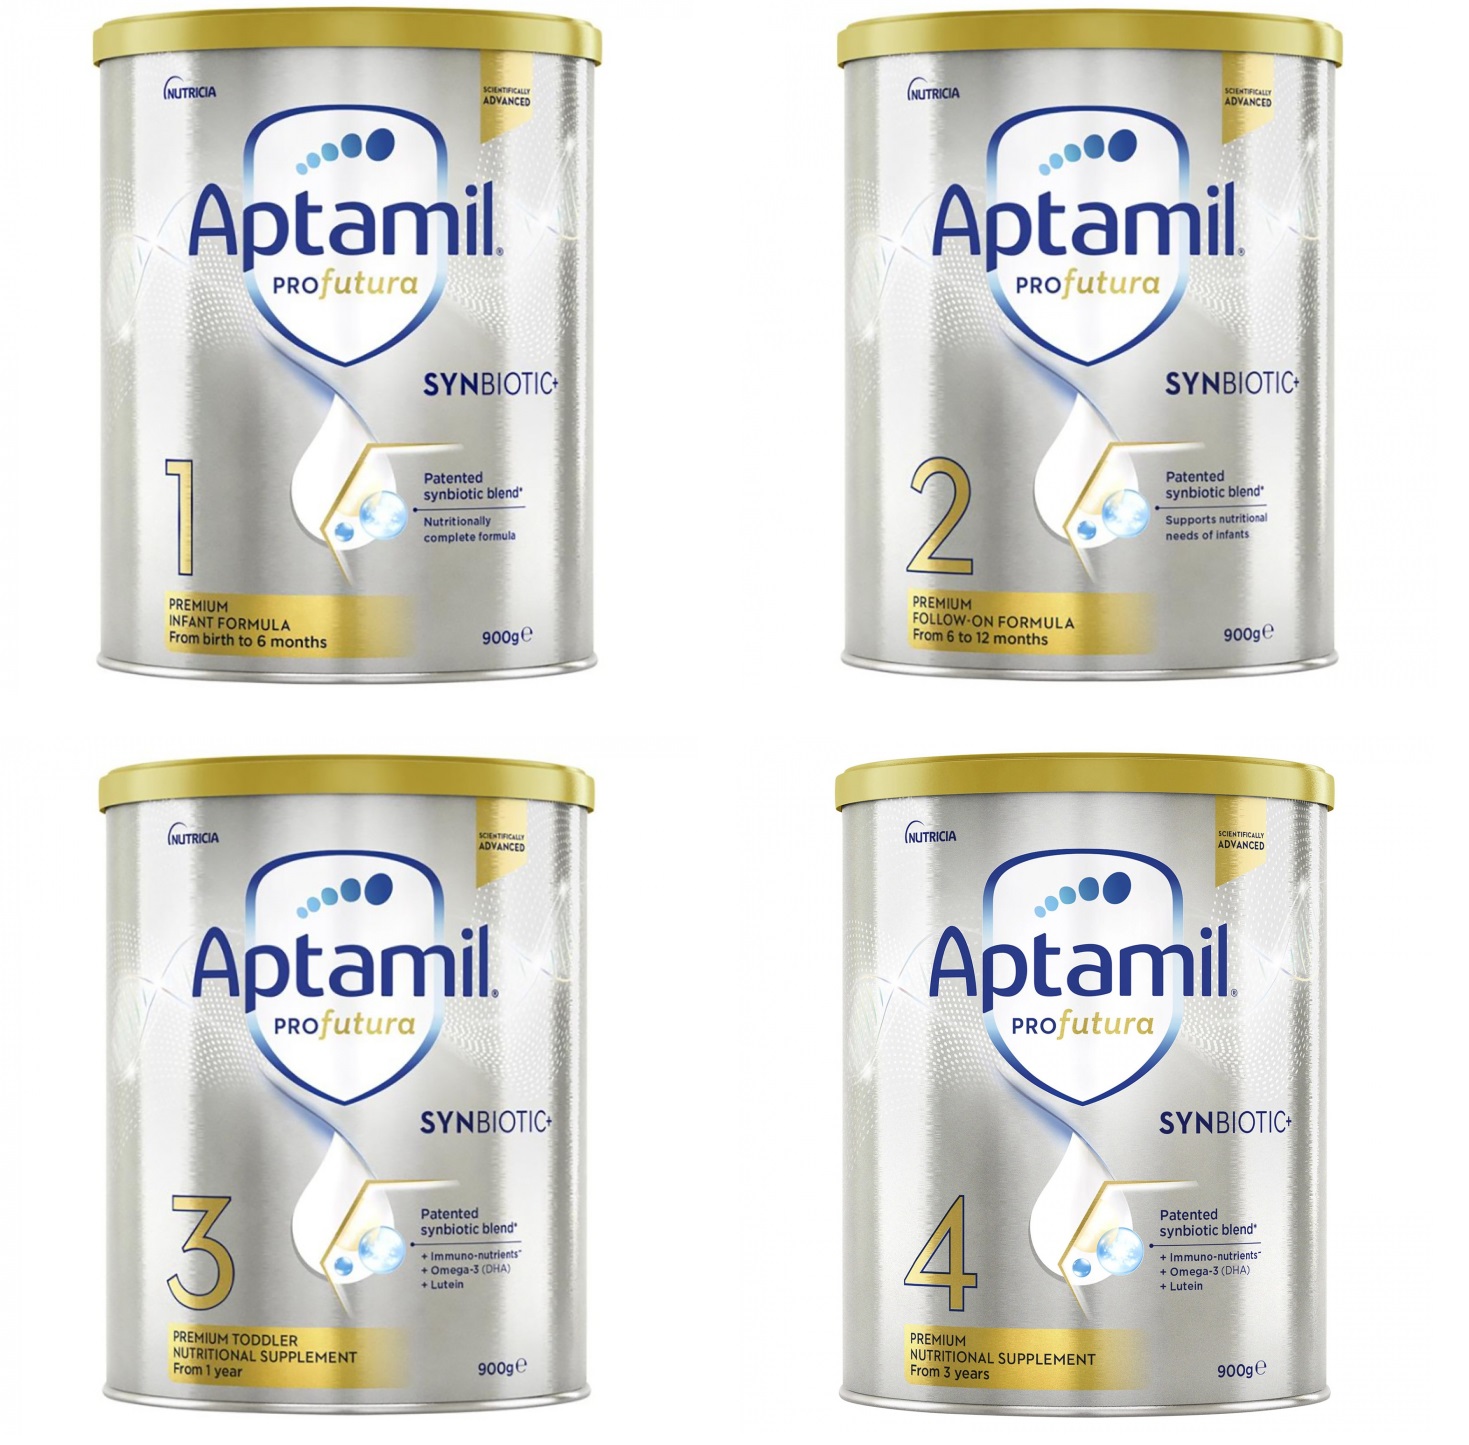 Tìm hiểu về quy tắc vàng pha sữa Aptamil để giữ cho bé mạnh khỏe